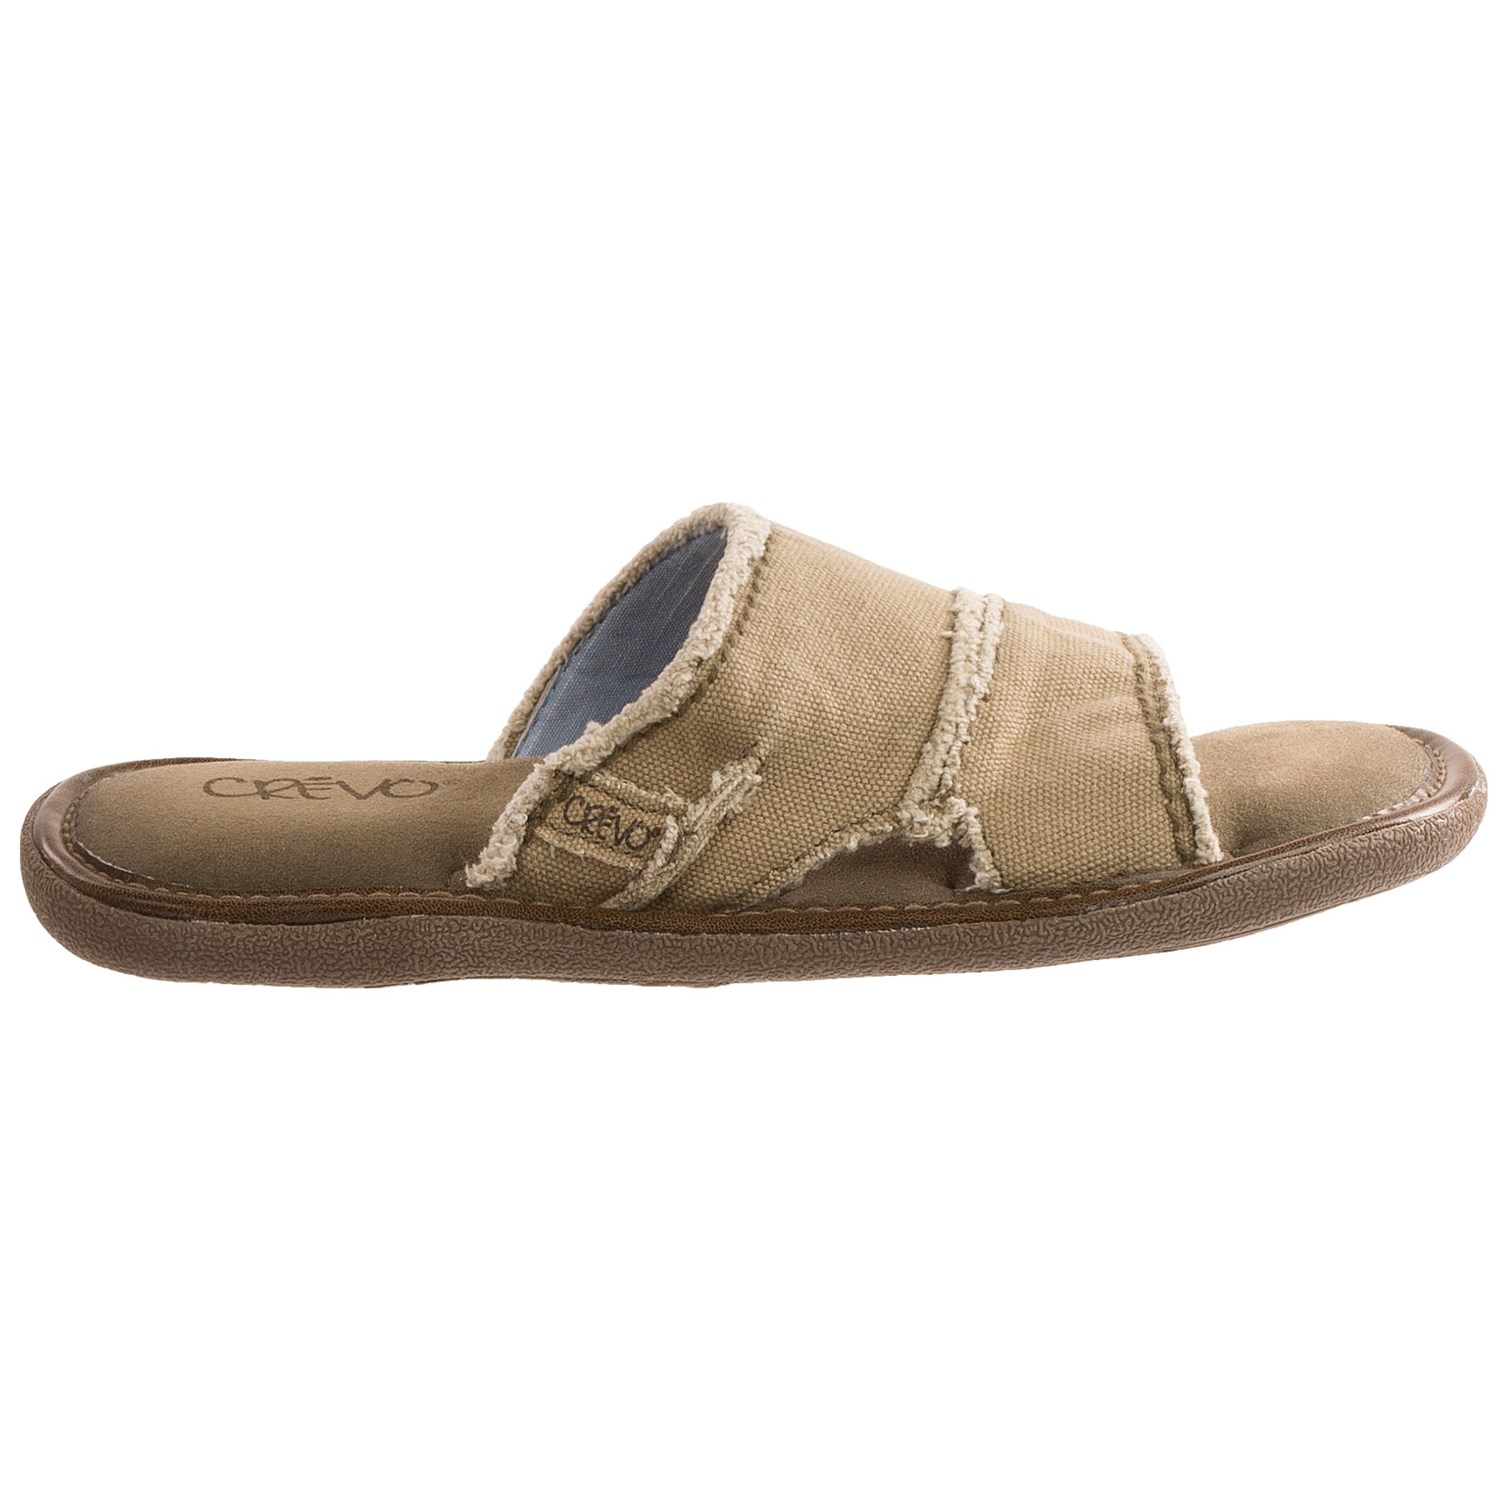 Crevo Fremont Slide Sandals (For Men) 9237K - Save 48%